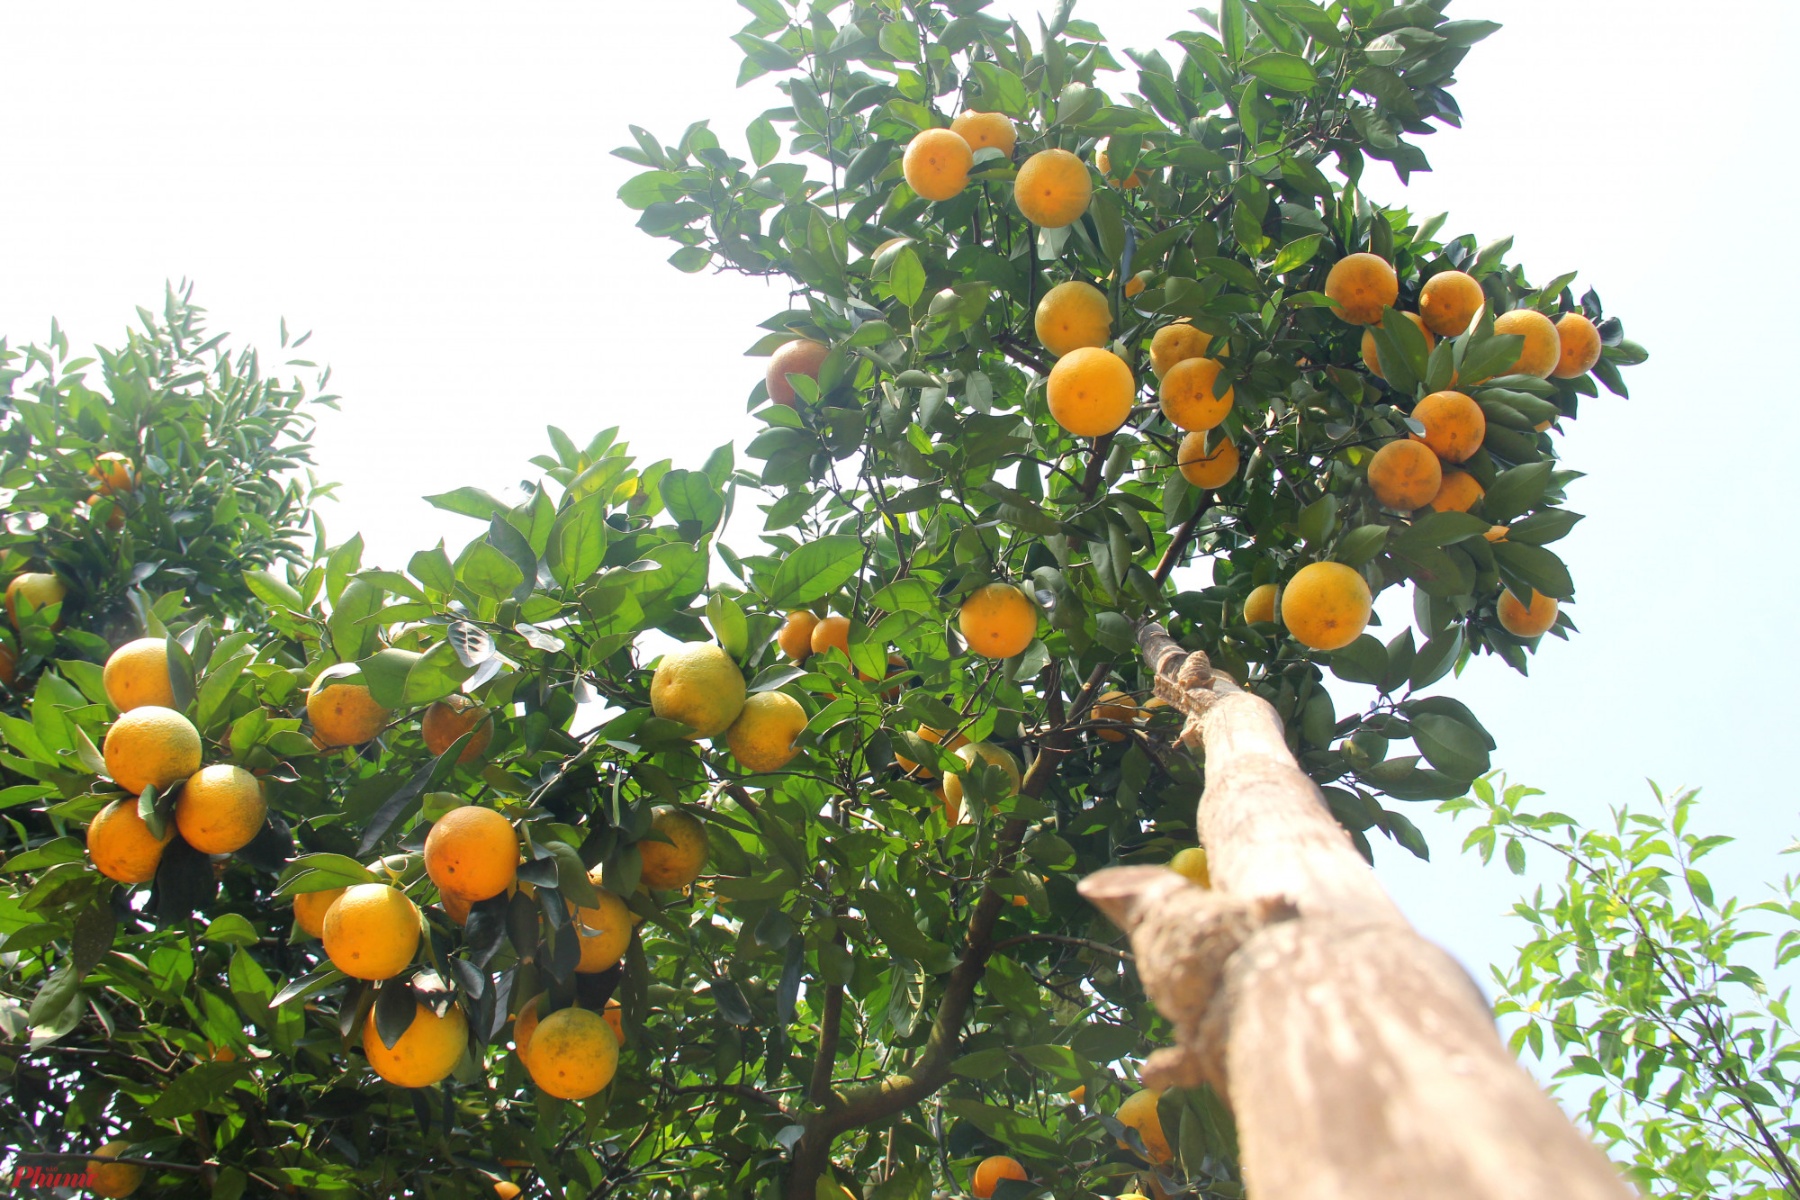 Nhiều cây cho quá nhiều quả, chủ vườn cam phải dùng dây, cọc tre chống đỡ để tránh làm gãy cành, ảnh hưởng đến bộ rễ của cây.